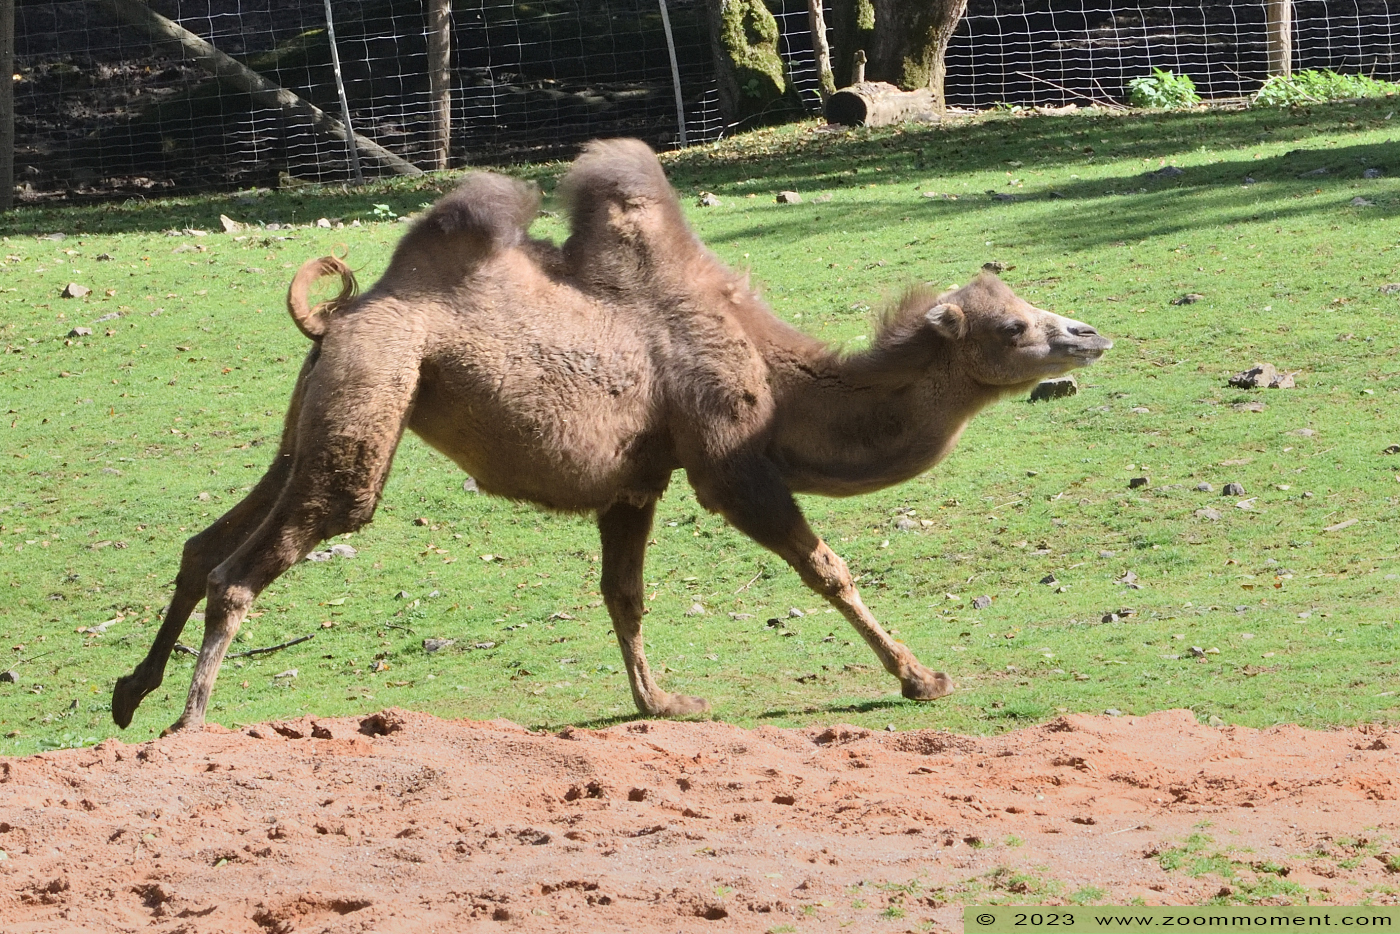 kameel ( Camelus Camelus bactrianus bactrianus ) camel
Trefwoorden: Neunkircher Zoo Germany kameel Camelus bactrianus bactrianus camel